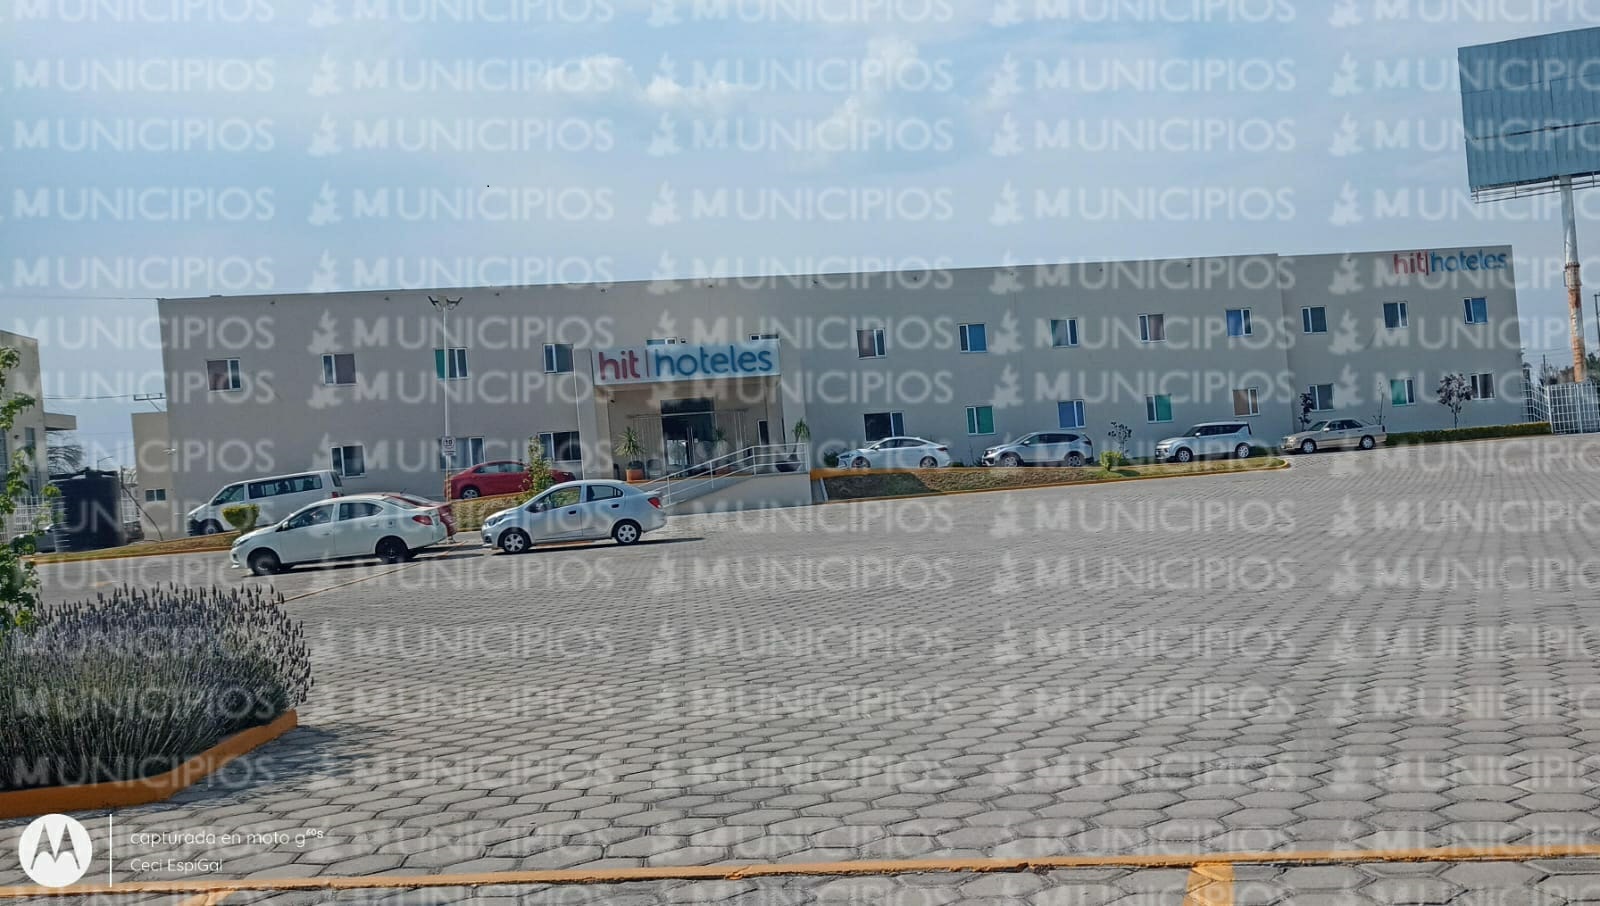 VIDEO Ubican presunta droga en hotel cercano al aeropuerto de Huejotzingo